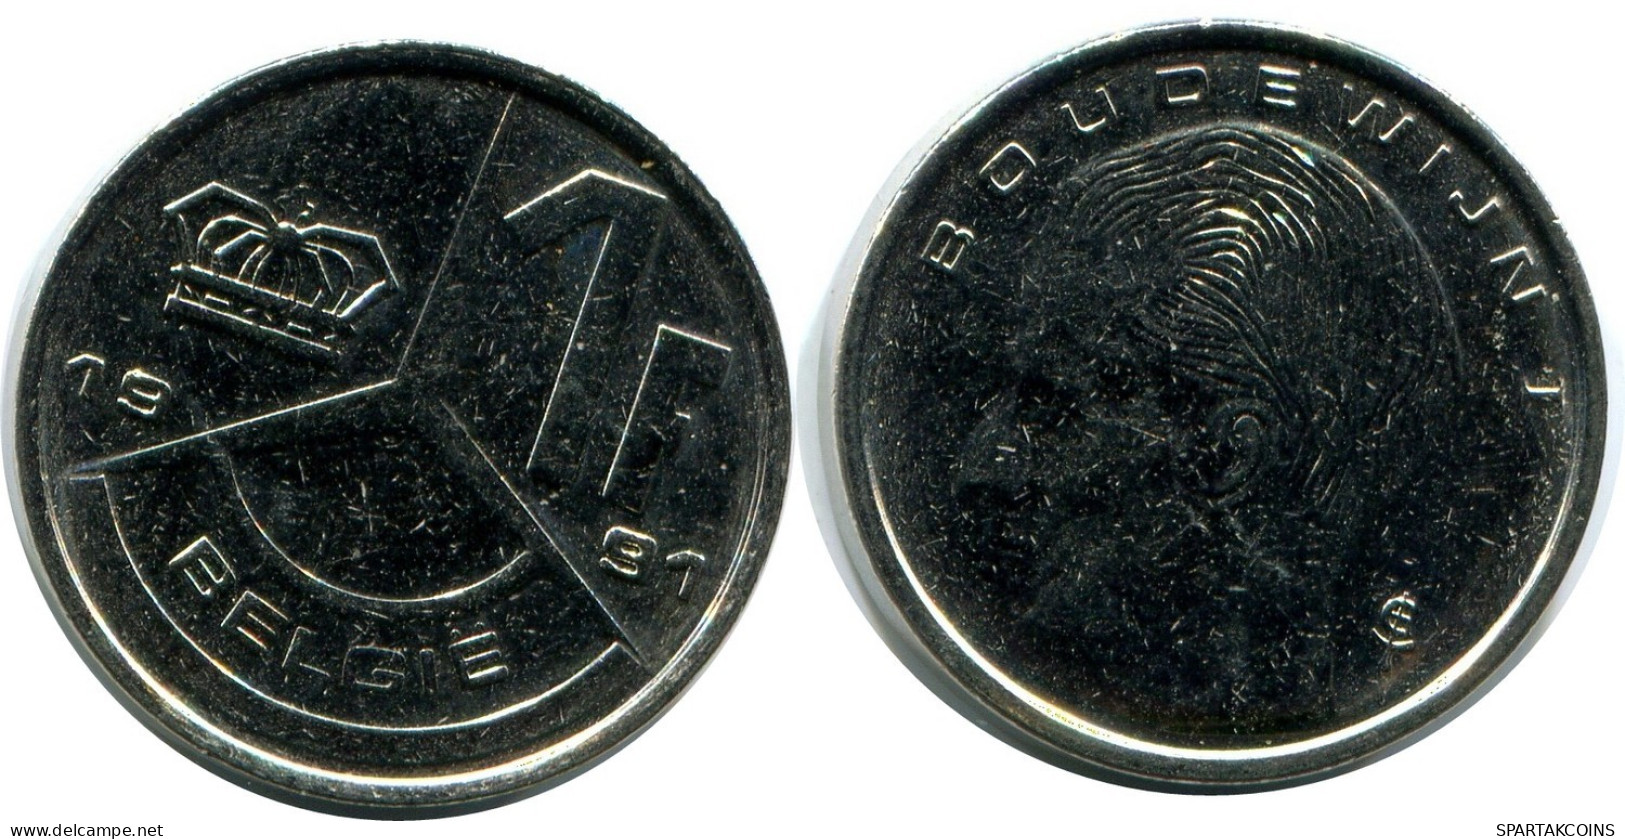 1 FRANC 1991 DUTCH Text BELGIUM Coin #AZ357.U.A - 1 Franc